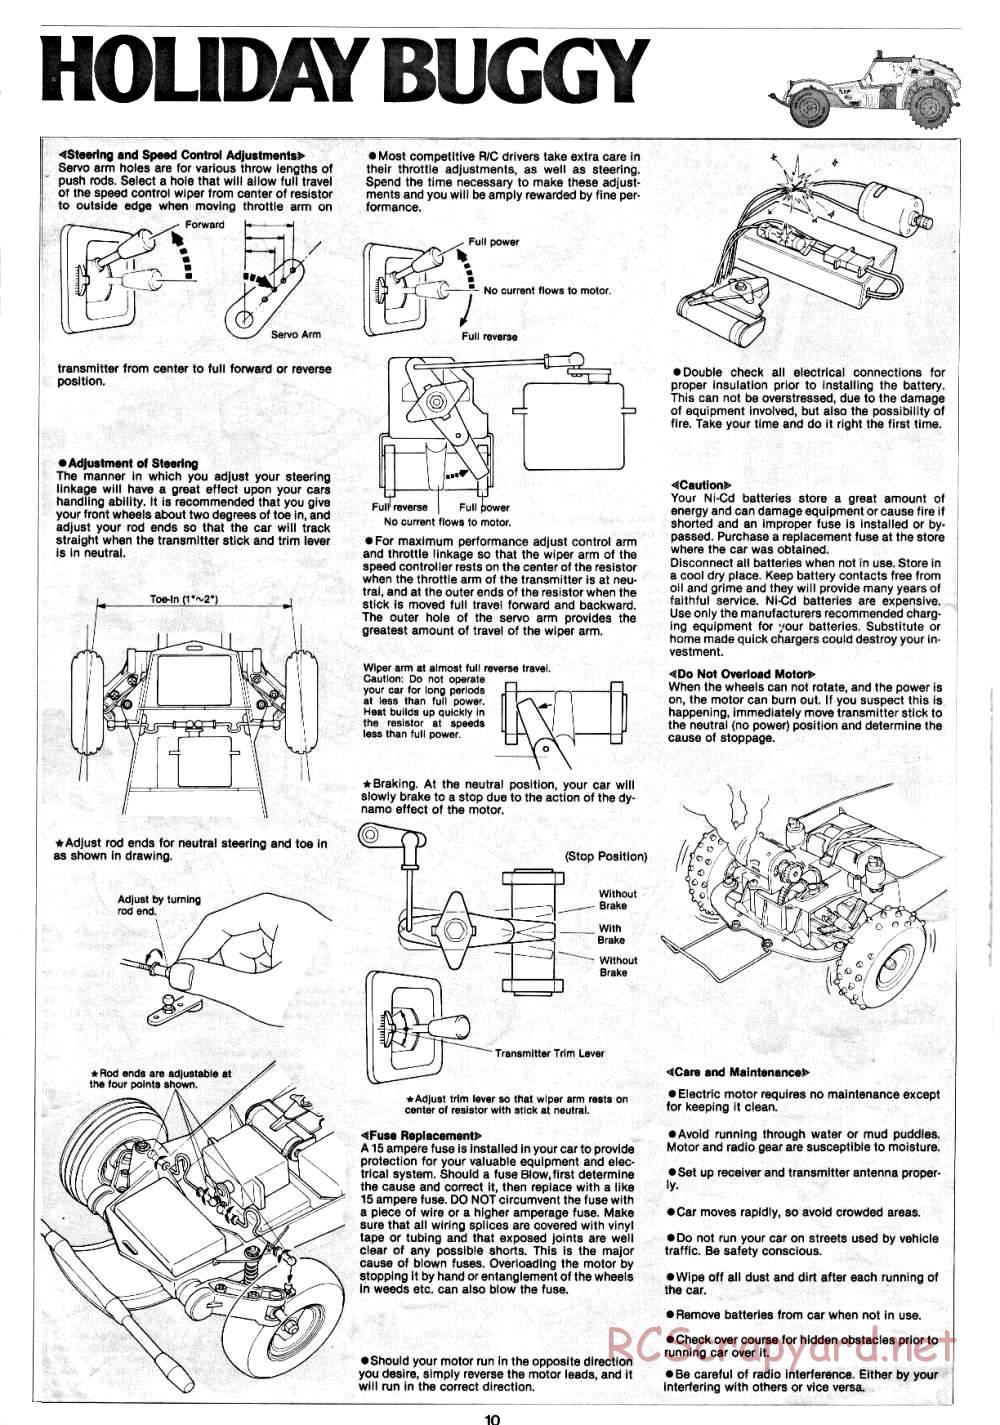 Tamiya - Holiday Buggy - 58023 - Manual - Page 10